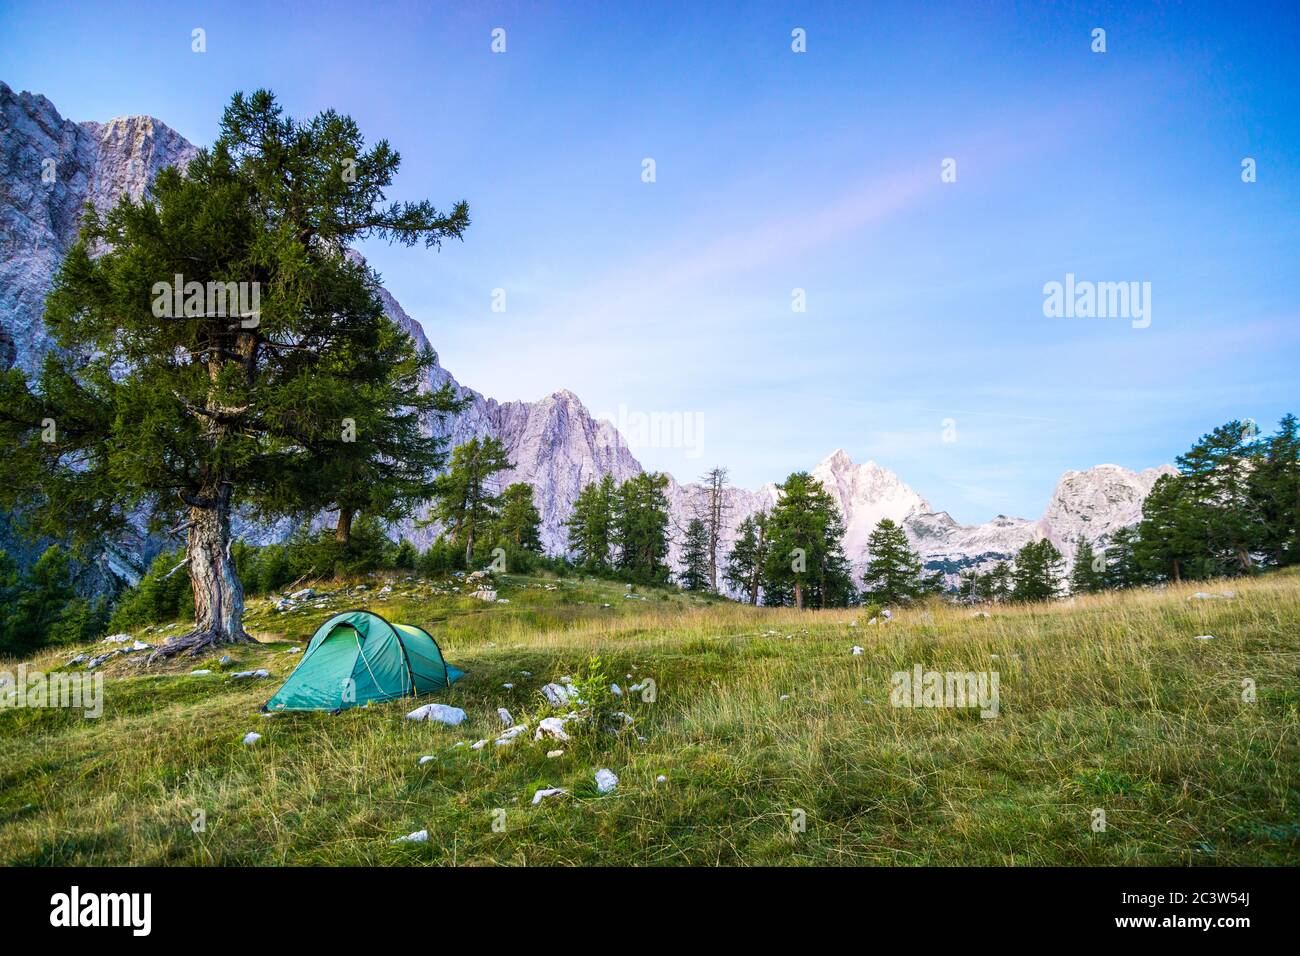 Ein Zelt leuchtet unter einem Mondnachthimmel zur Dämmerung. Die Julischen Alpen, Nationalpark Triglav, Slowenien. Blick vom Berg Slemenova, Sleme zum Berg Stockfoto